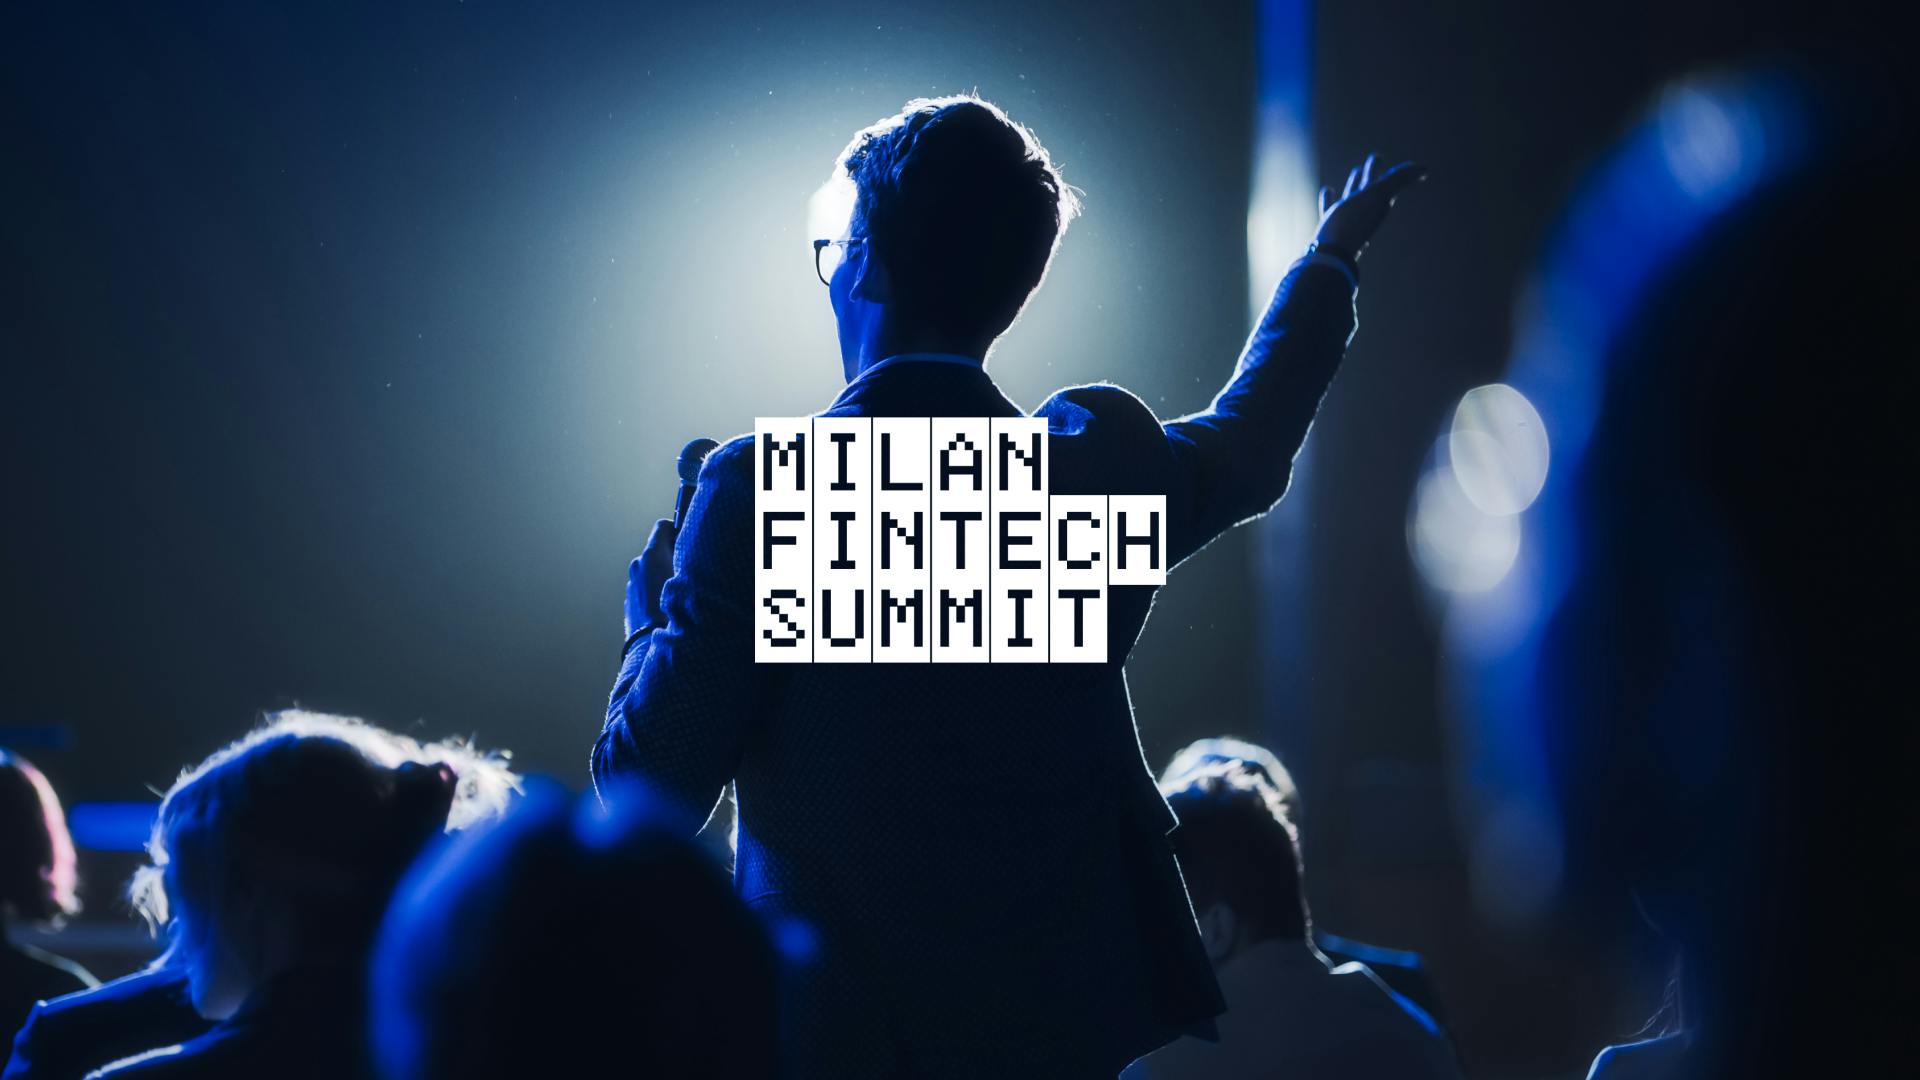 Crowd gathered at Milan Fintech Summit